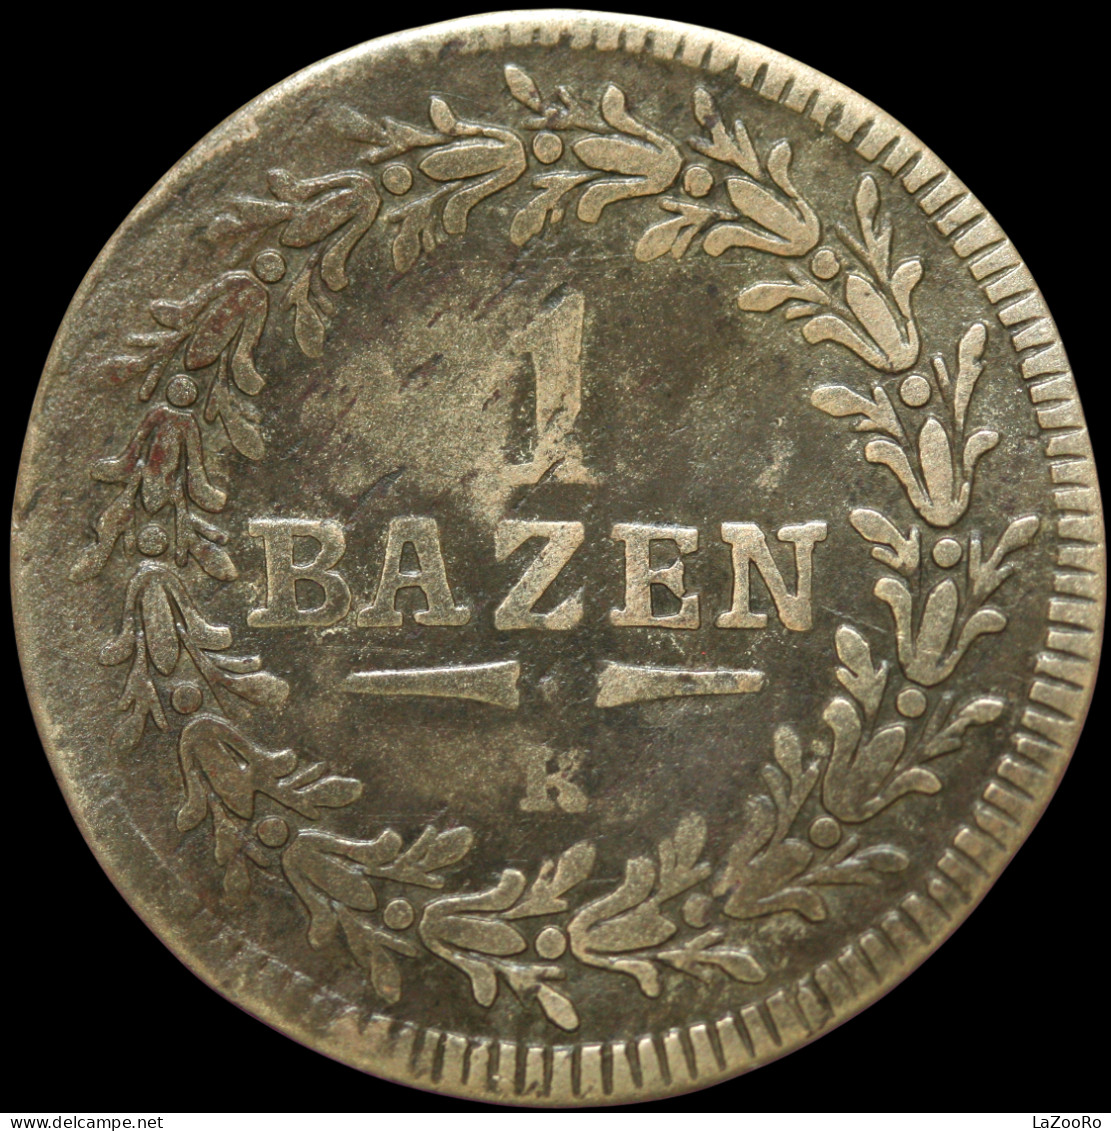 LaZooRo: Switzerland SAINT GALL 1 Batzen 1815 VF - Silver - Cantonal Coins